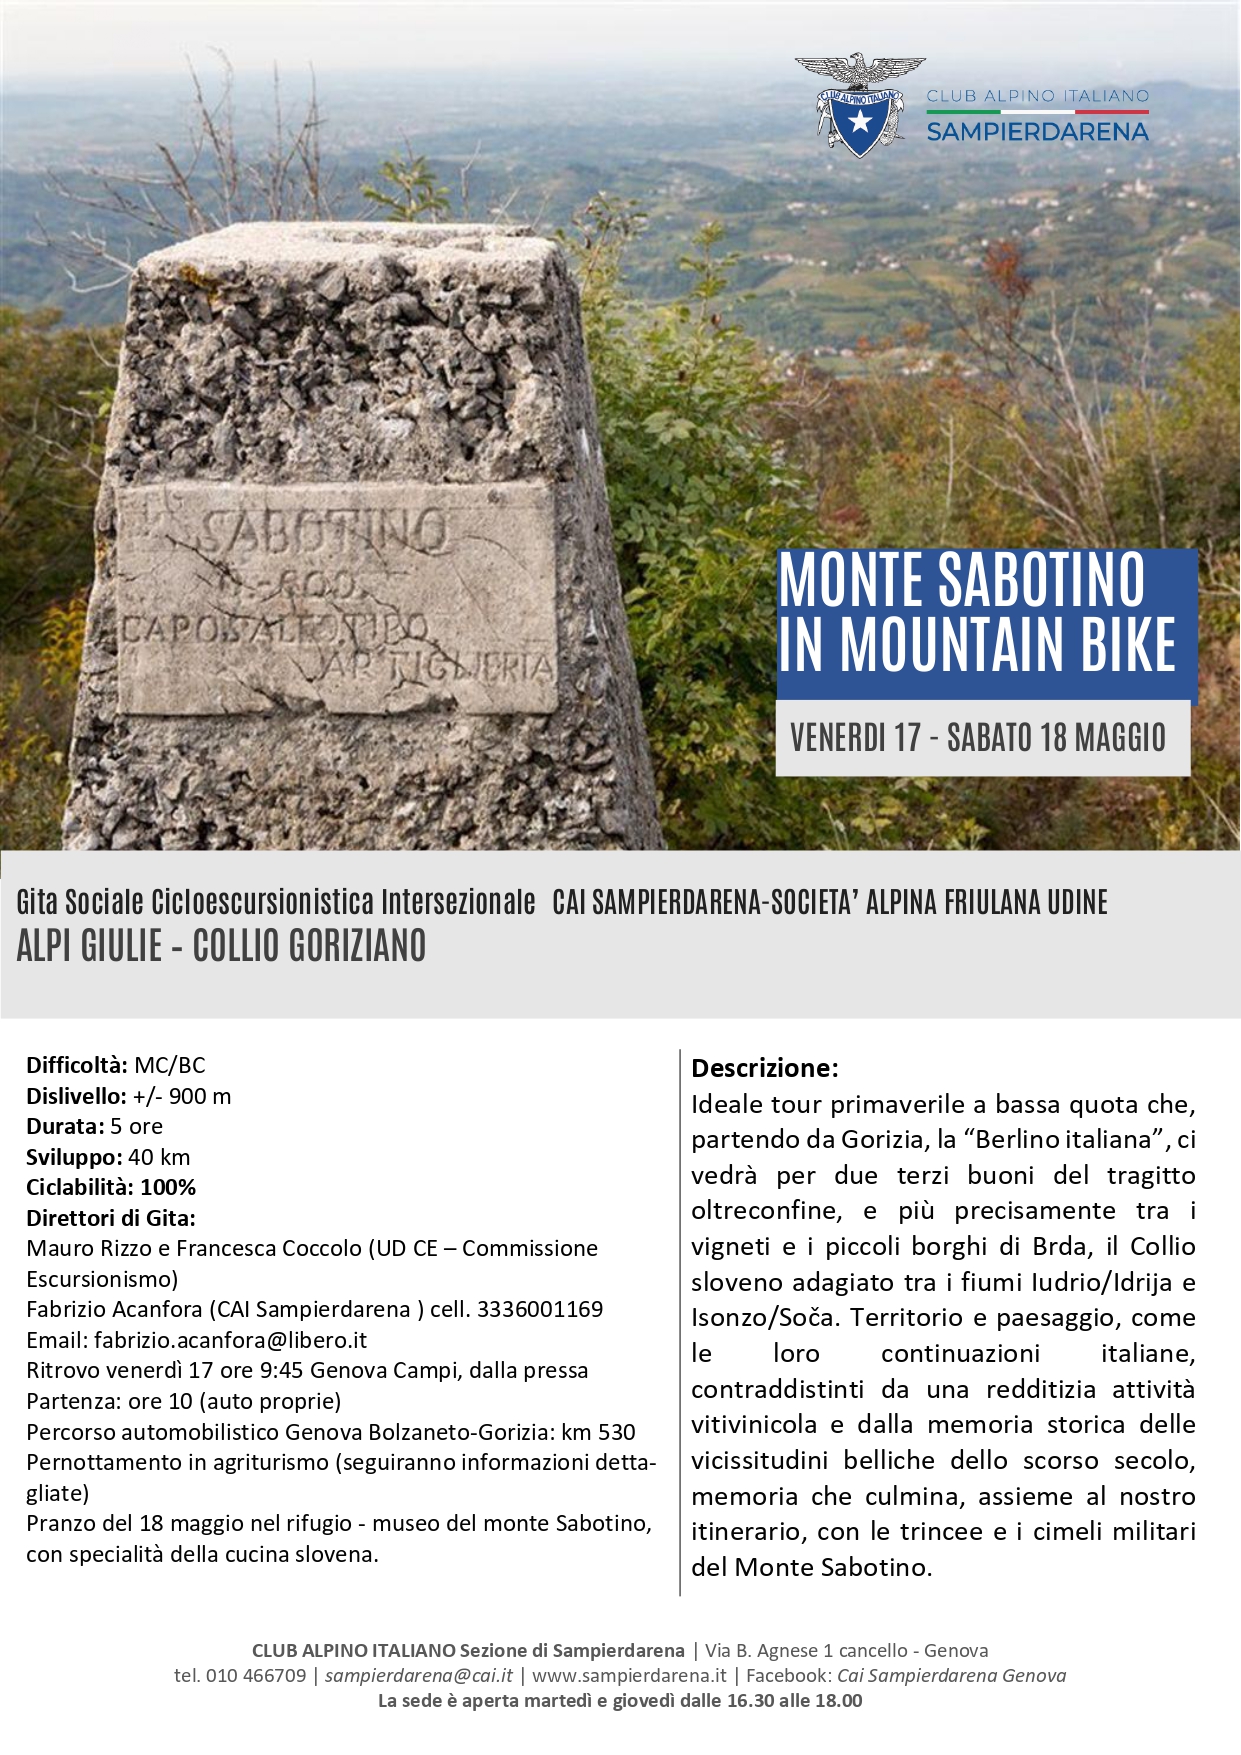 Venerdi 17 e Sabato 18 Maggio – Cicloescursionismo – M.Sabotino in mountain bike